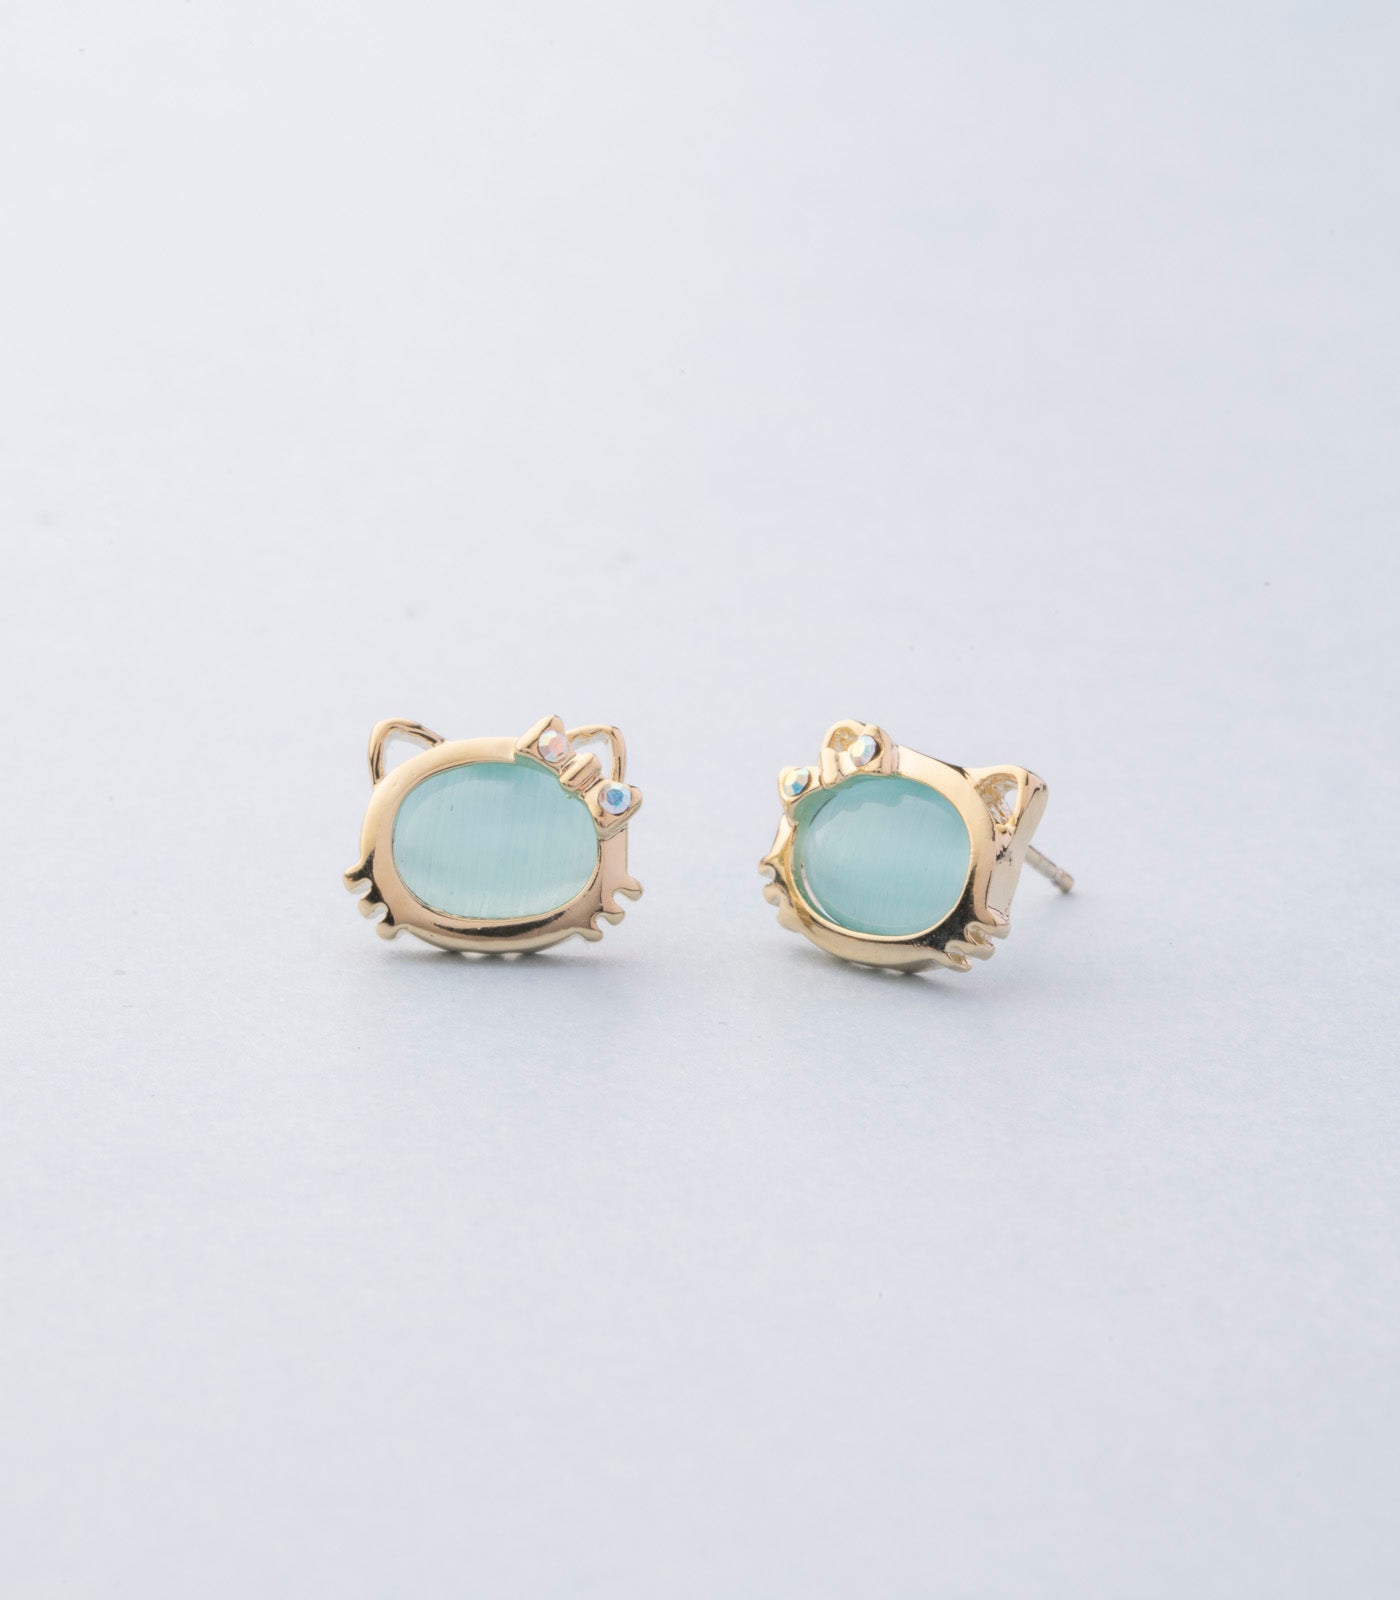 Apollo magic earrings (Brass)